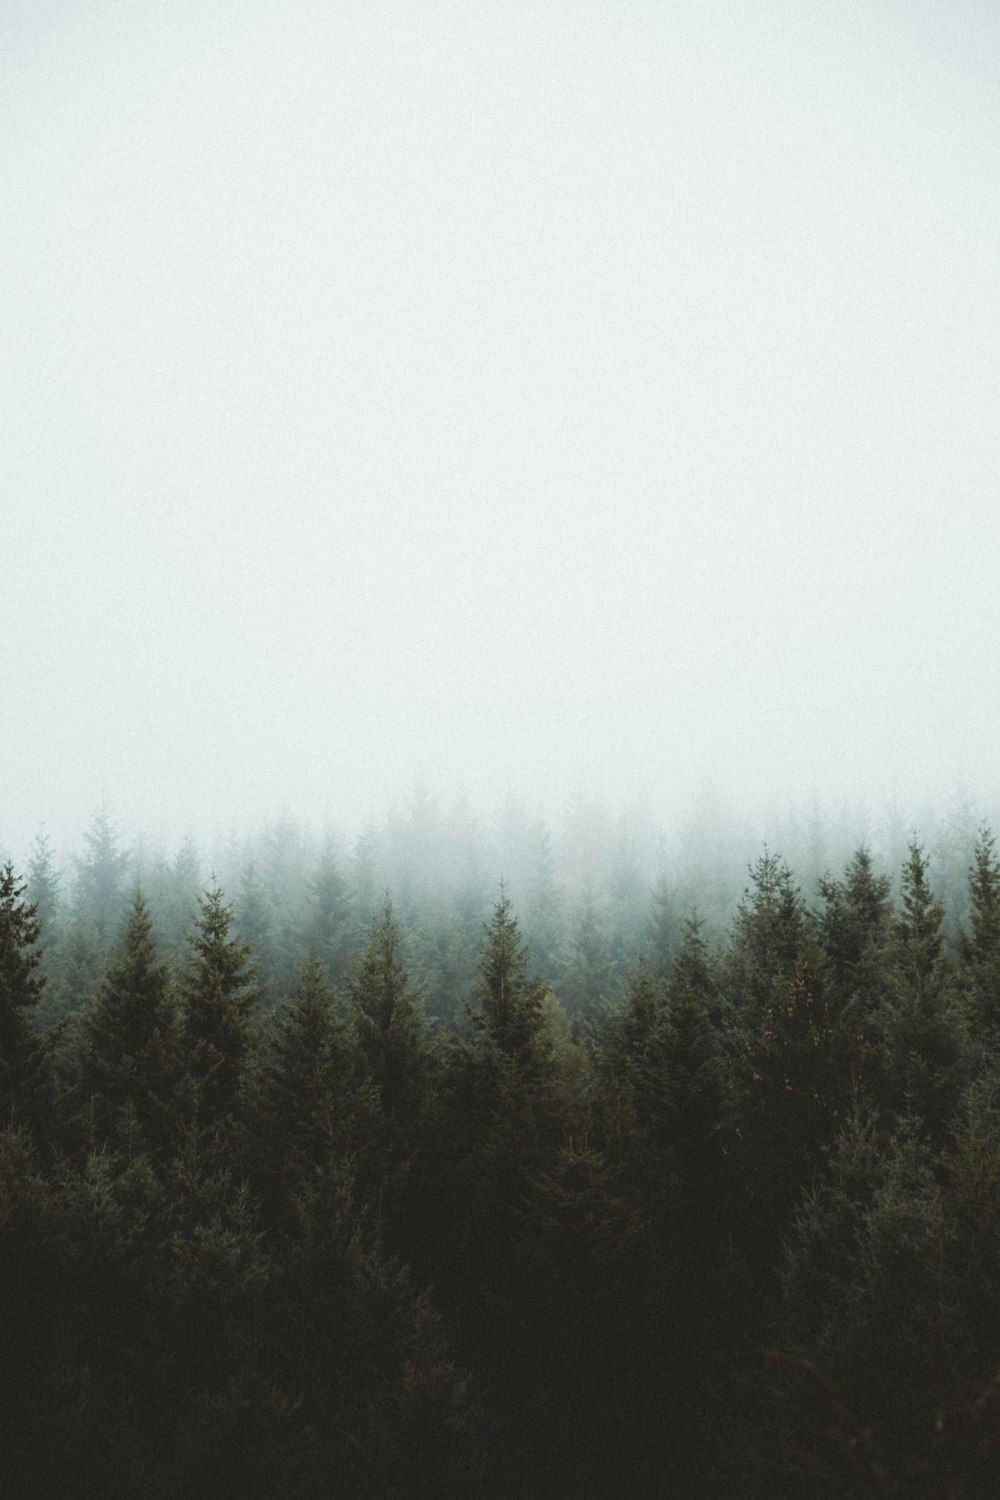 photo of pine trees